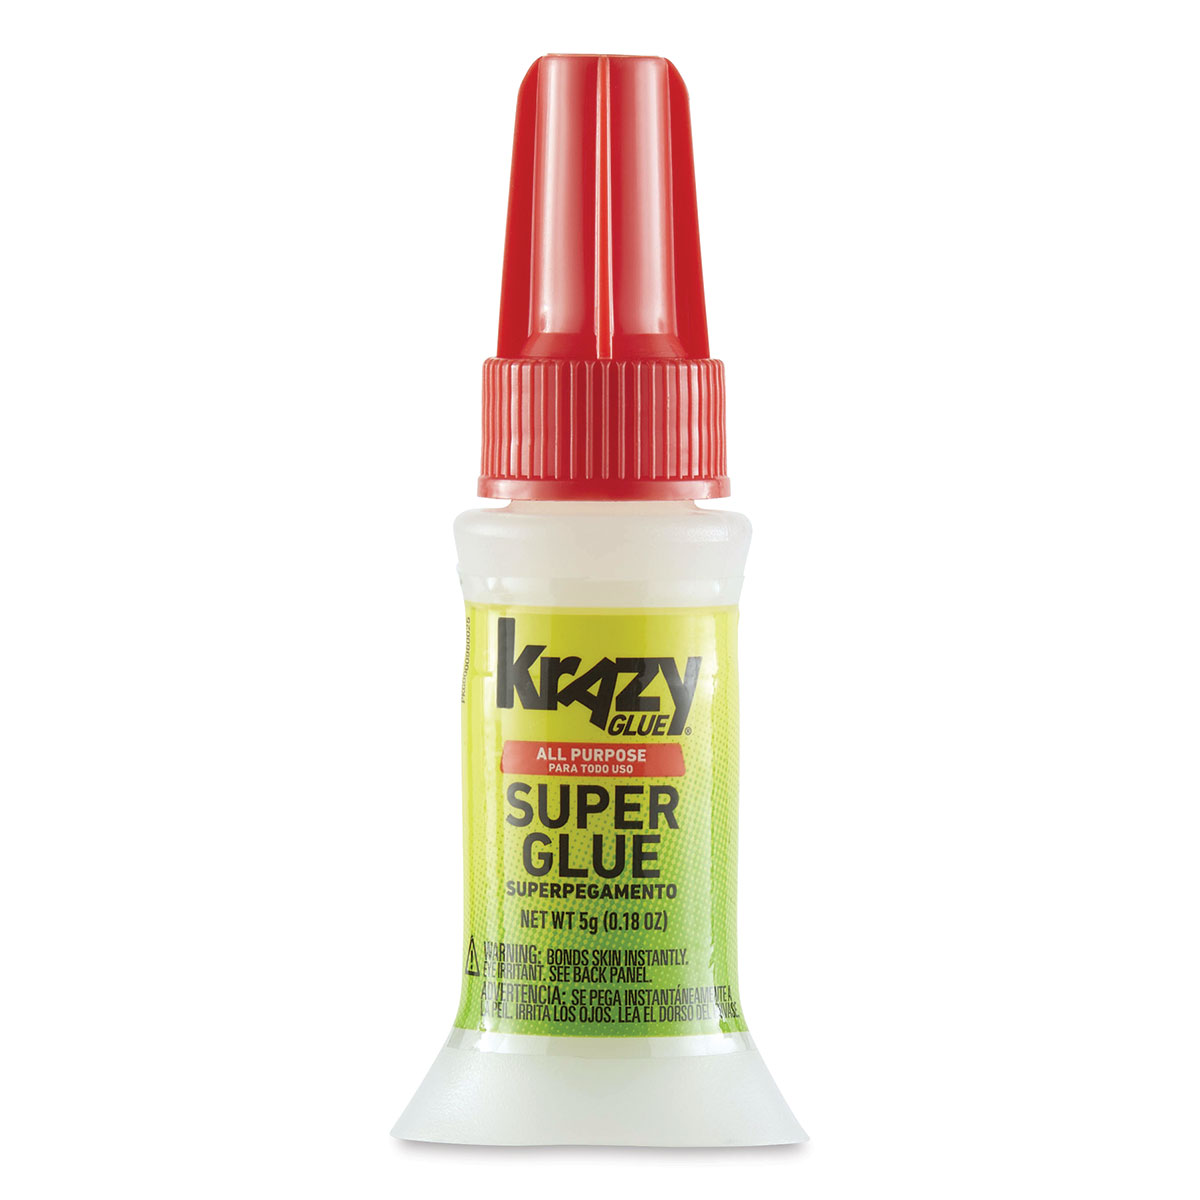 Krazy Glue Maximum Bond Super Glue - 0.18 oz pkg